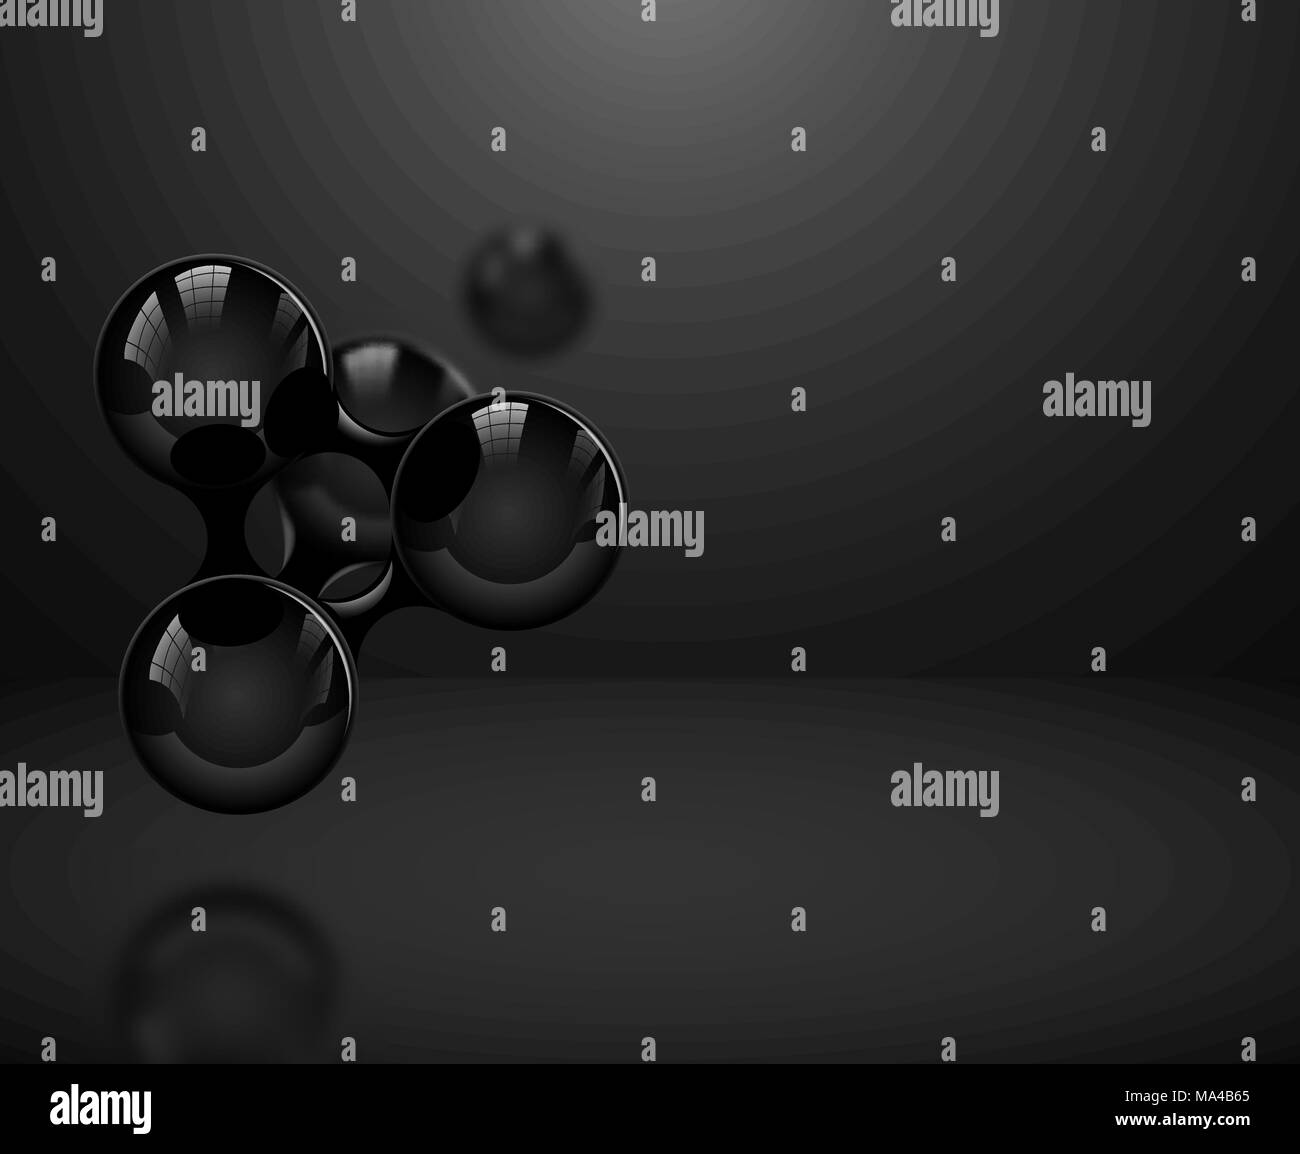 Abstract di nero lucido molecole o atomi su sfondo scuro. Illustrazione Vettoriale per la scienza moderna medical design o logo. Struttura Molecolare Illustrazione Vettoriale